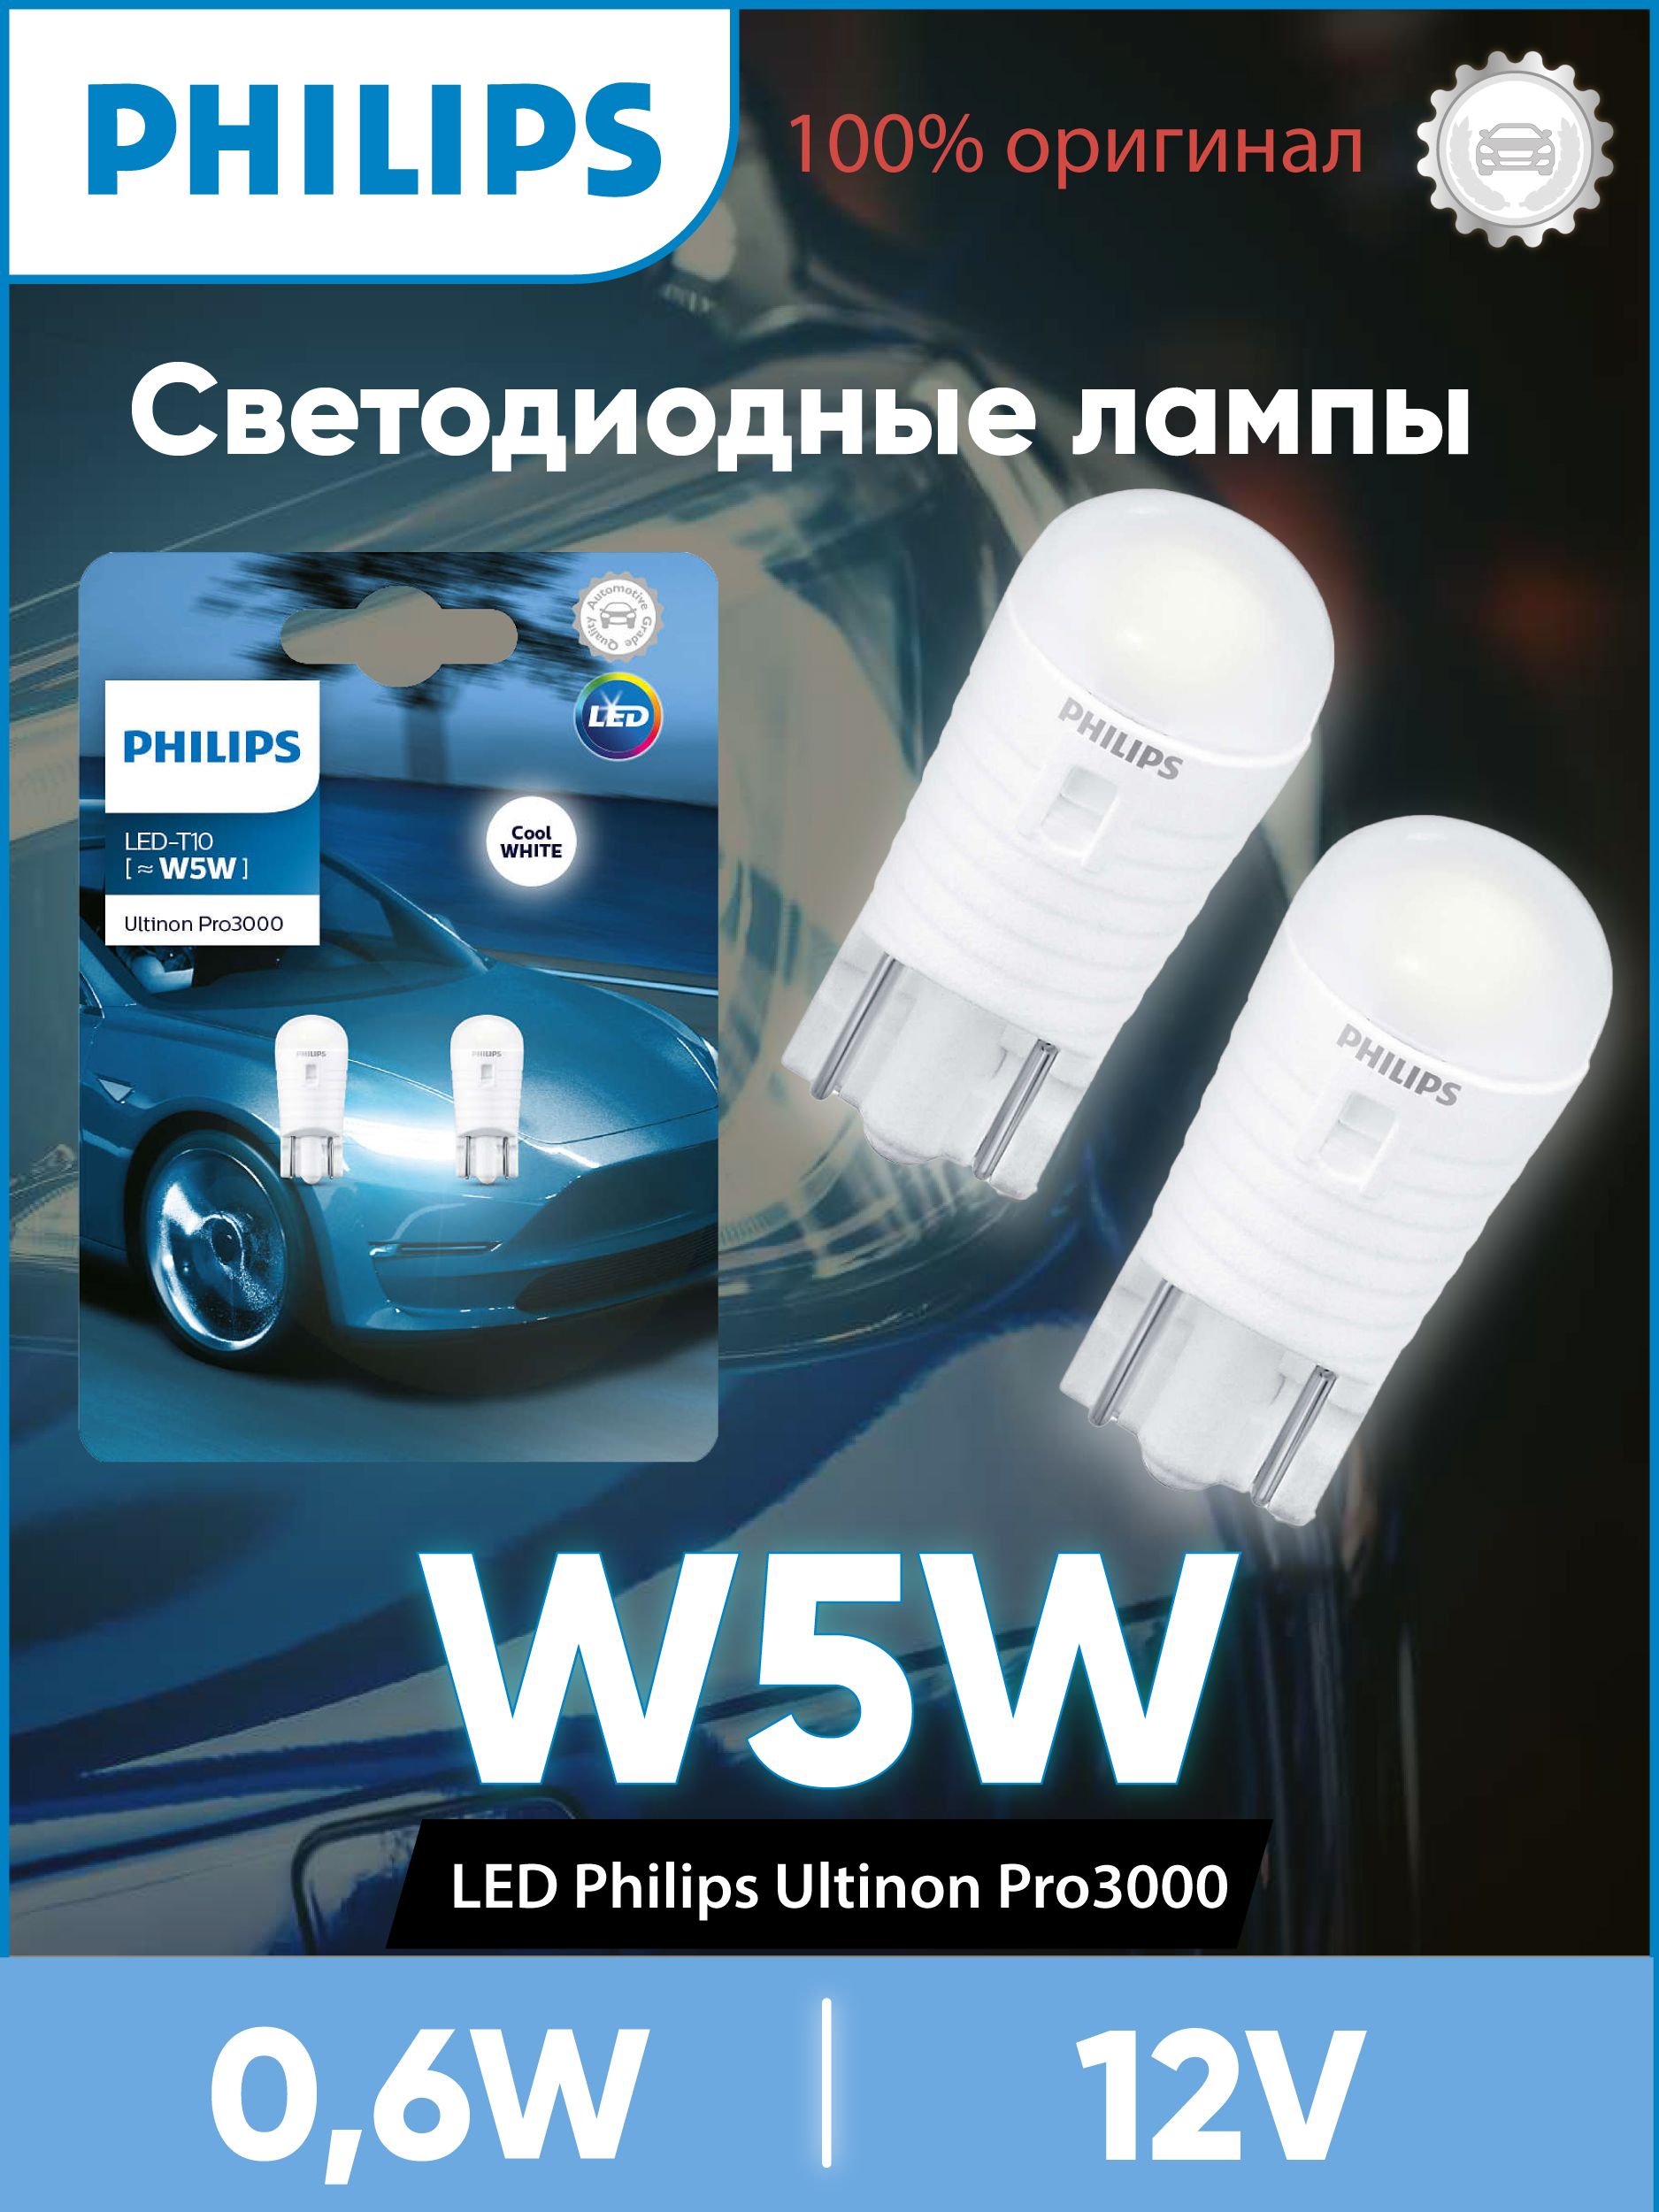 Отзывы и обзор Автолампы PHILIPS W5W Whitevision купить в Минске